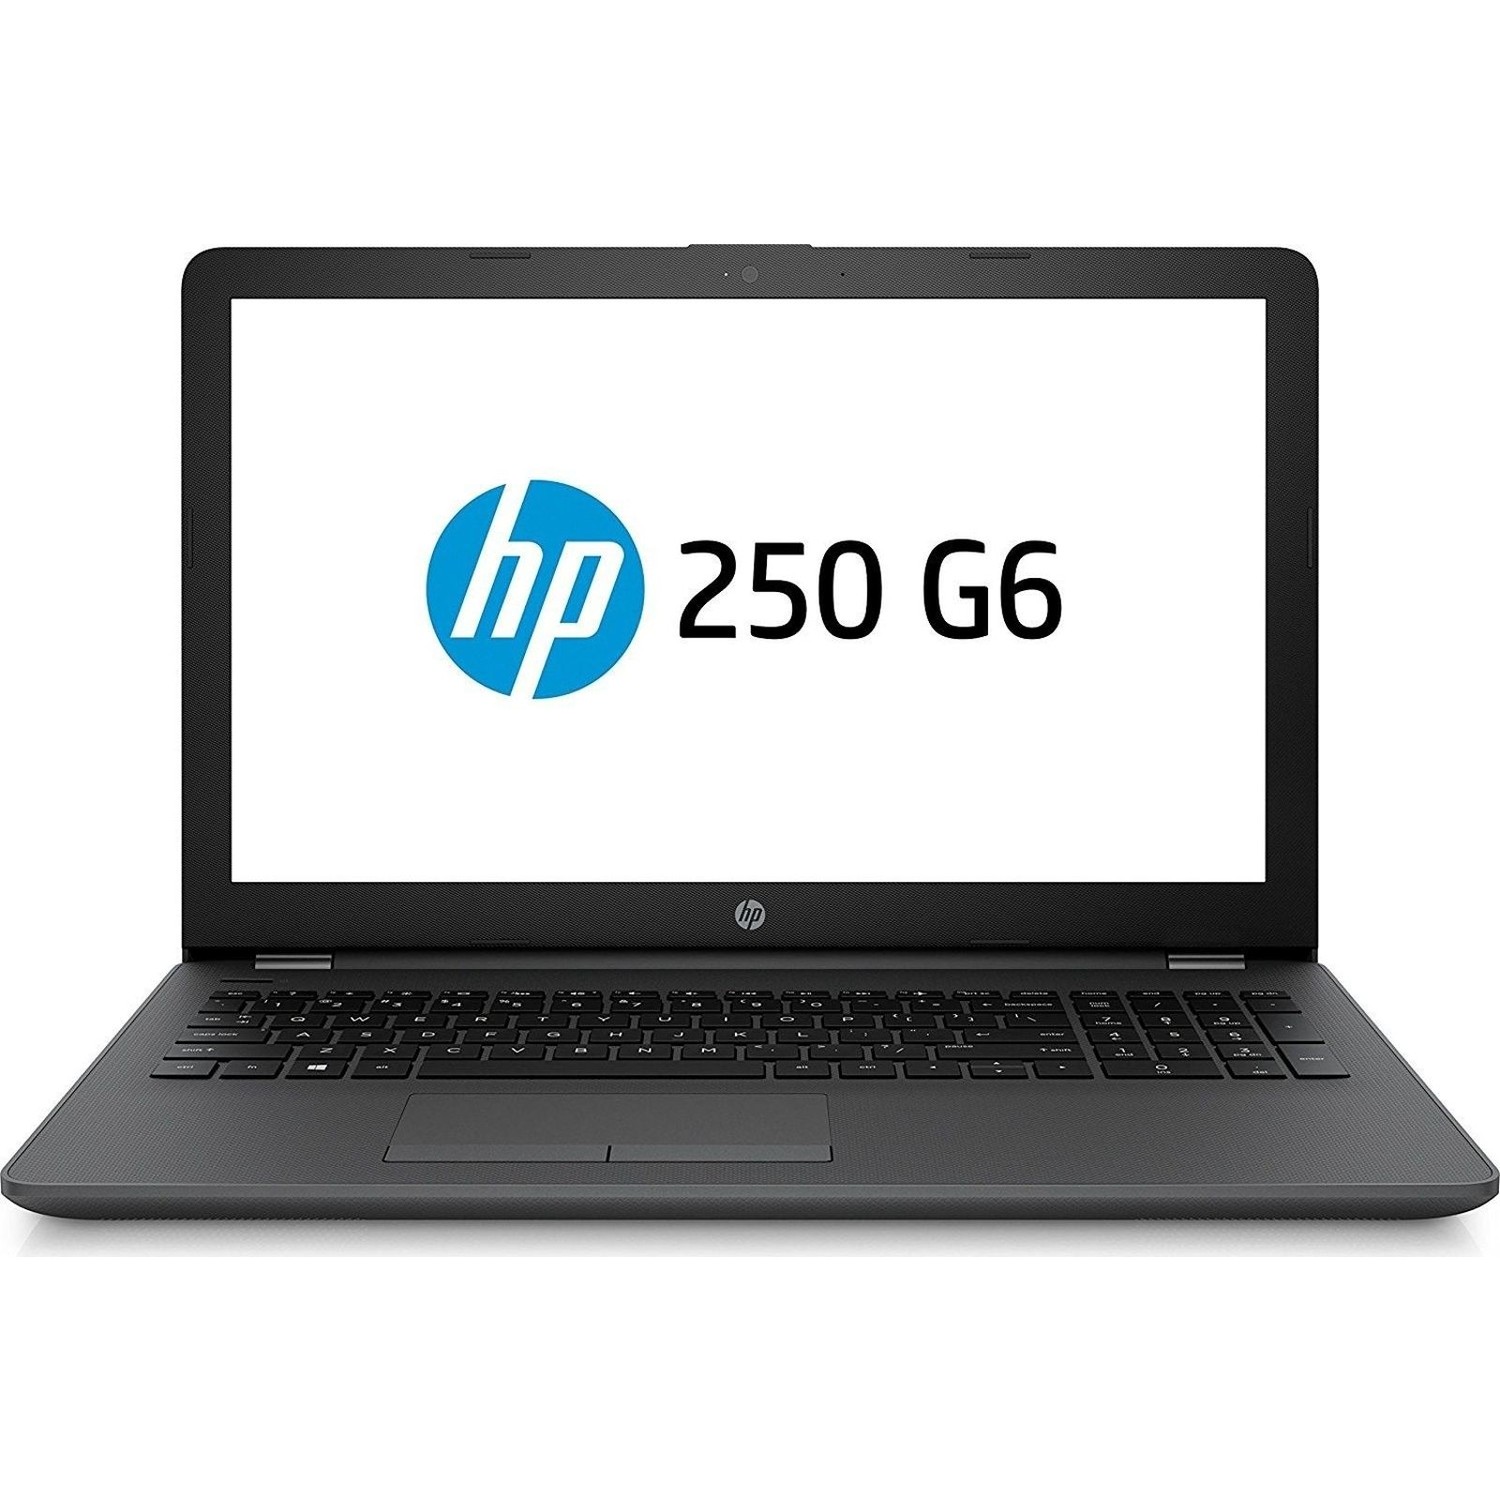 HP 250 G6 (Pentium N3710/Celeron N3060, DDR3) Notebook